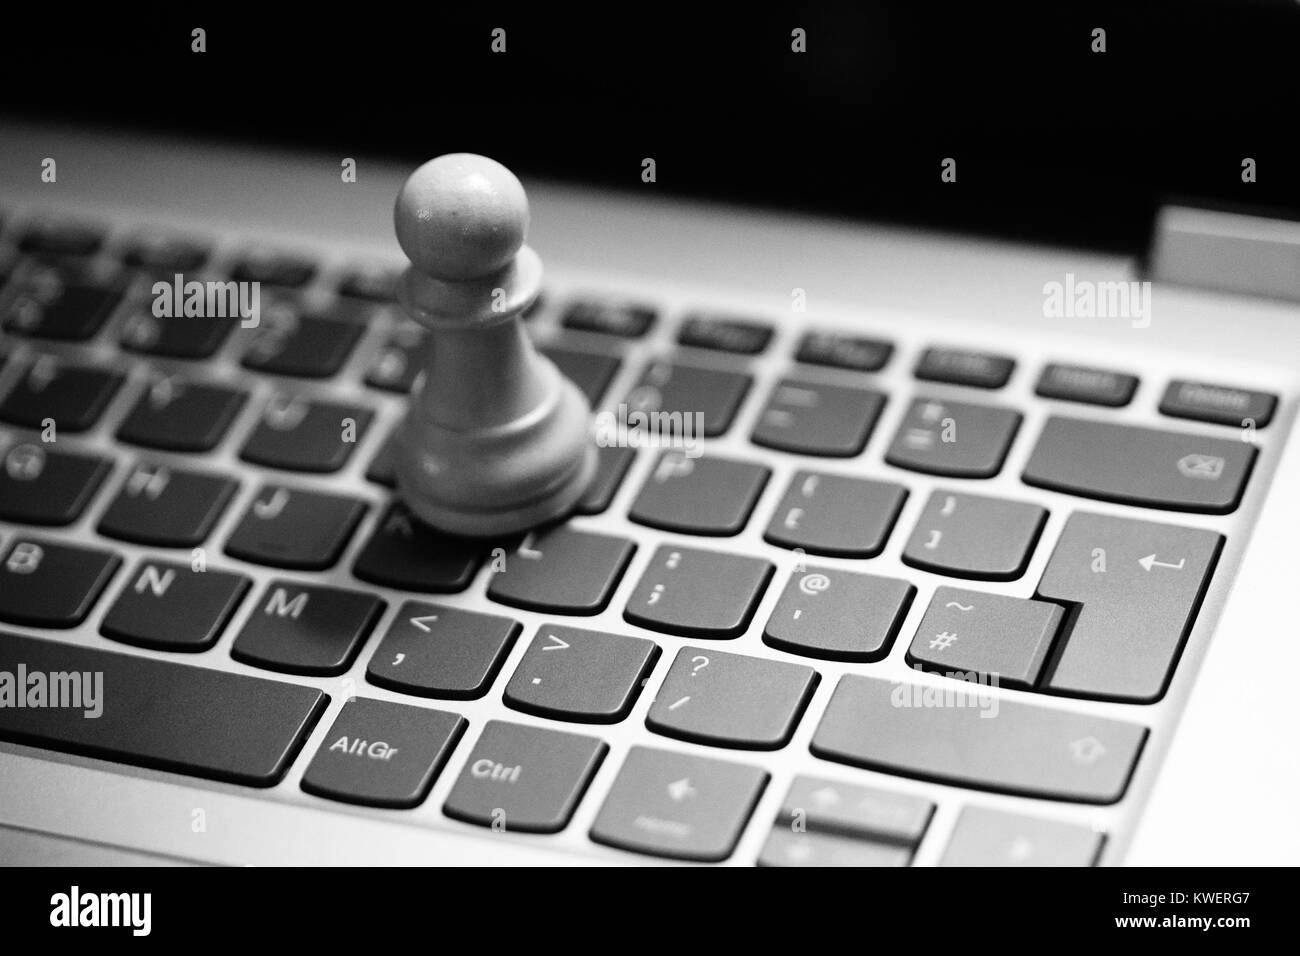 Les pions d'Échecs / kings on laptop keyboard - stratégie numérique Banque D'Images